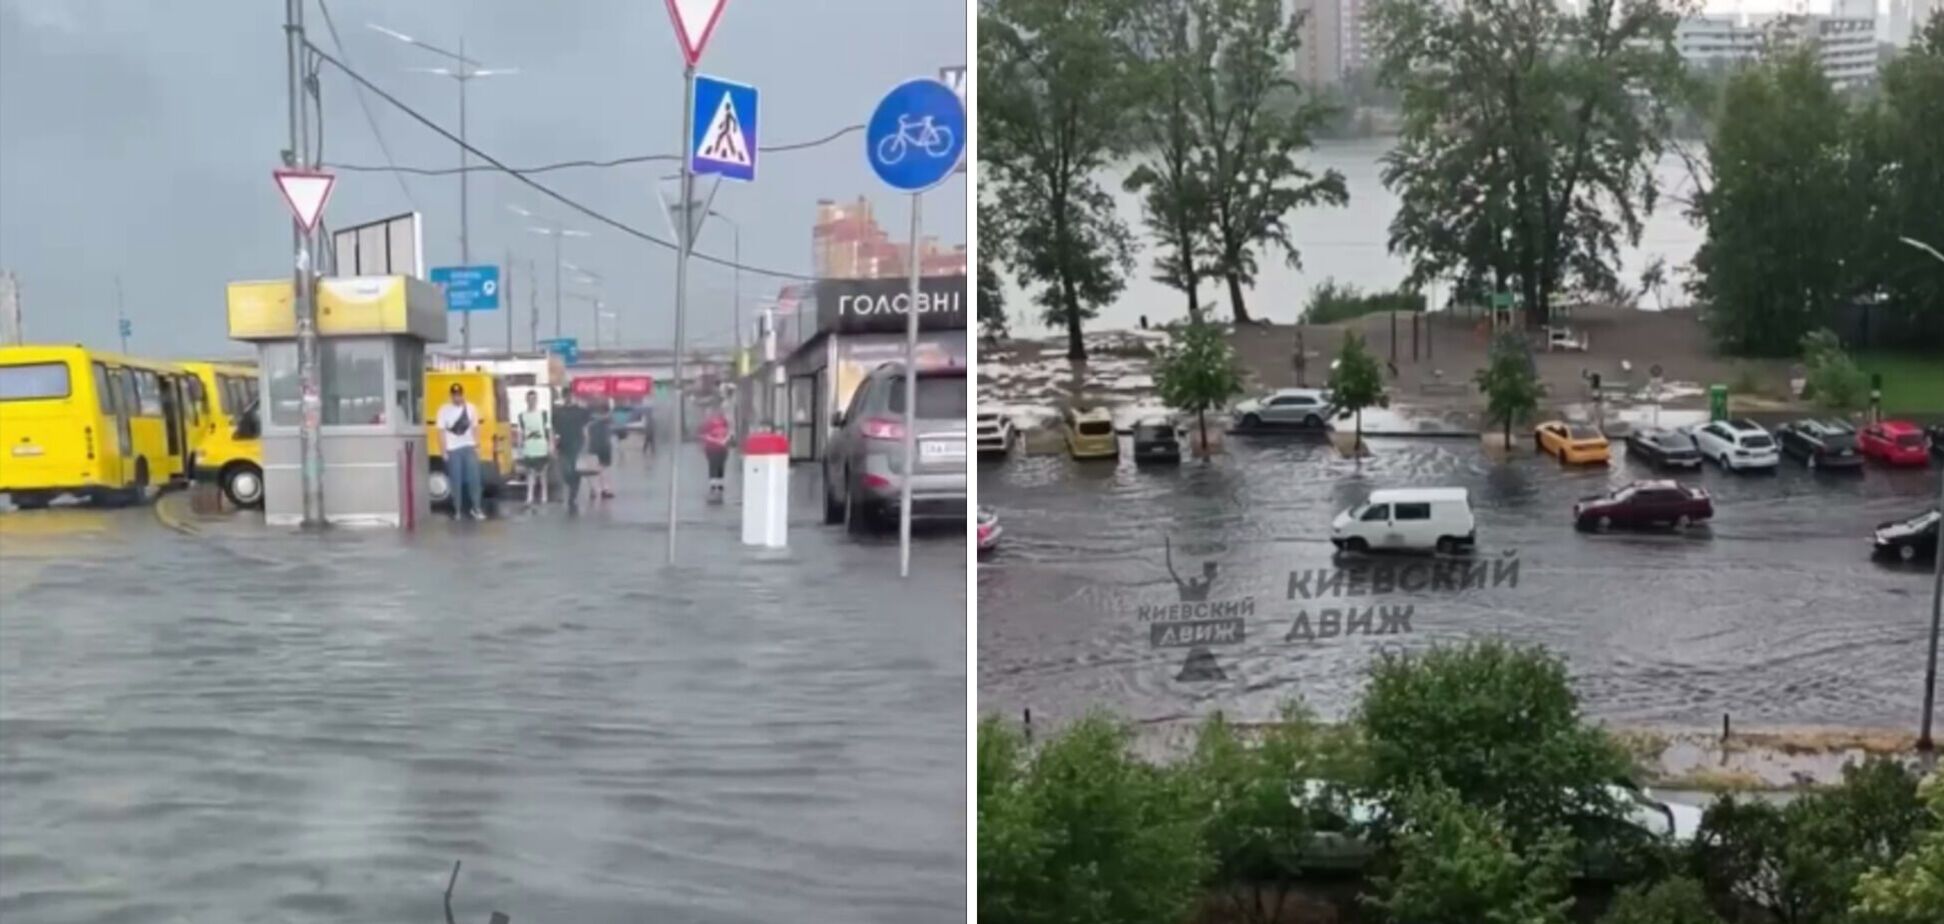 Через сильну зливу у столиці залило дороги, 'Київавтодор' усуває підтоплення, – Кличко